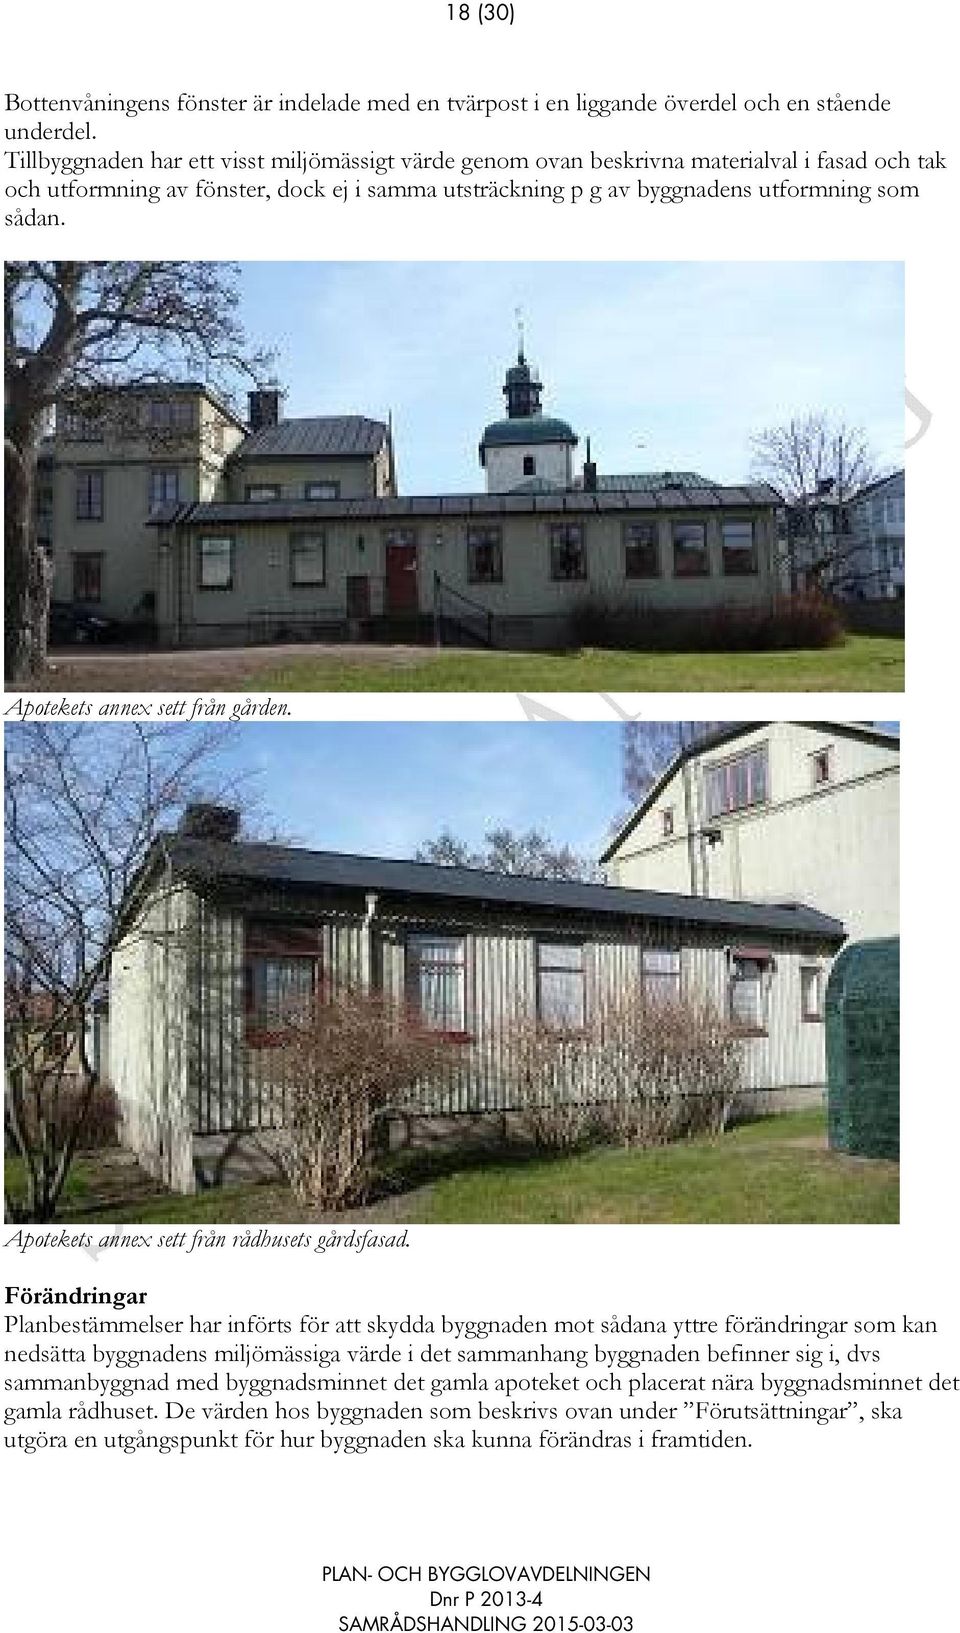 Apotekets annex sett från gården. Apotekets annex sett från rådhusets gårdsfasad.